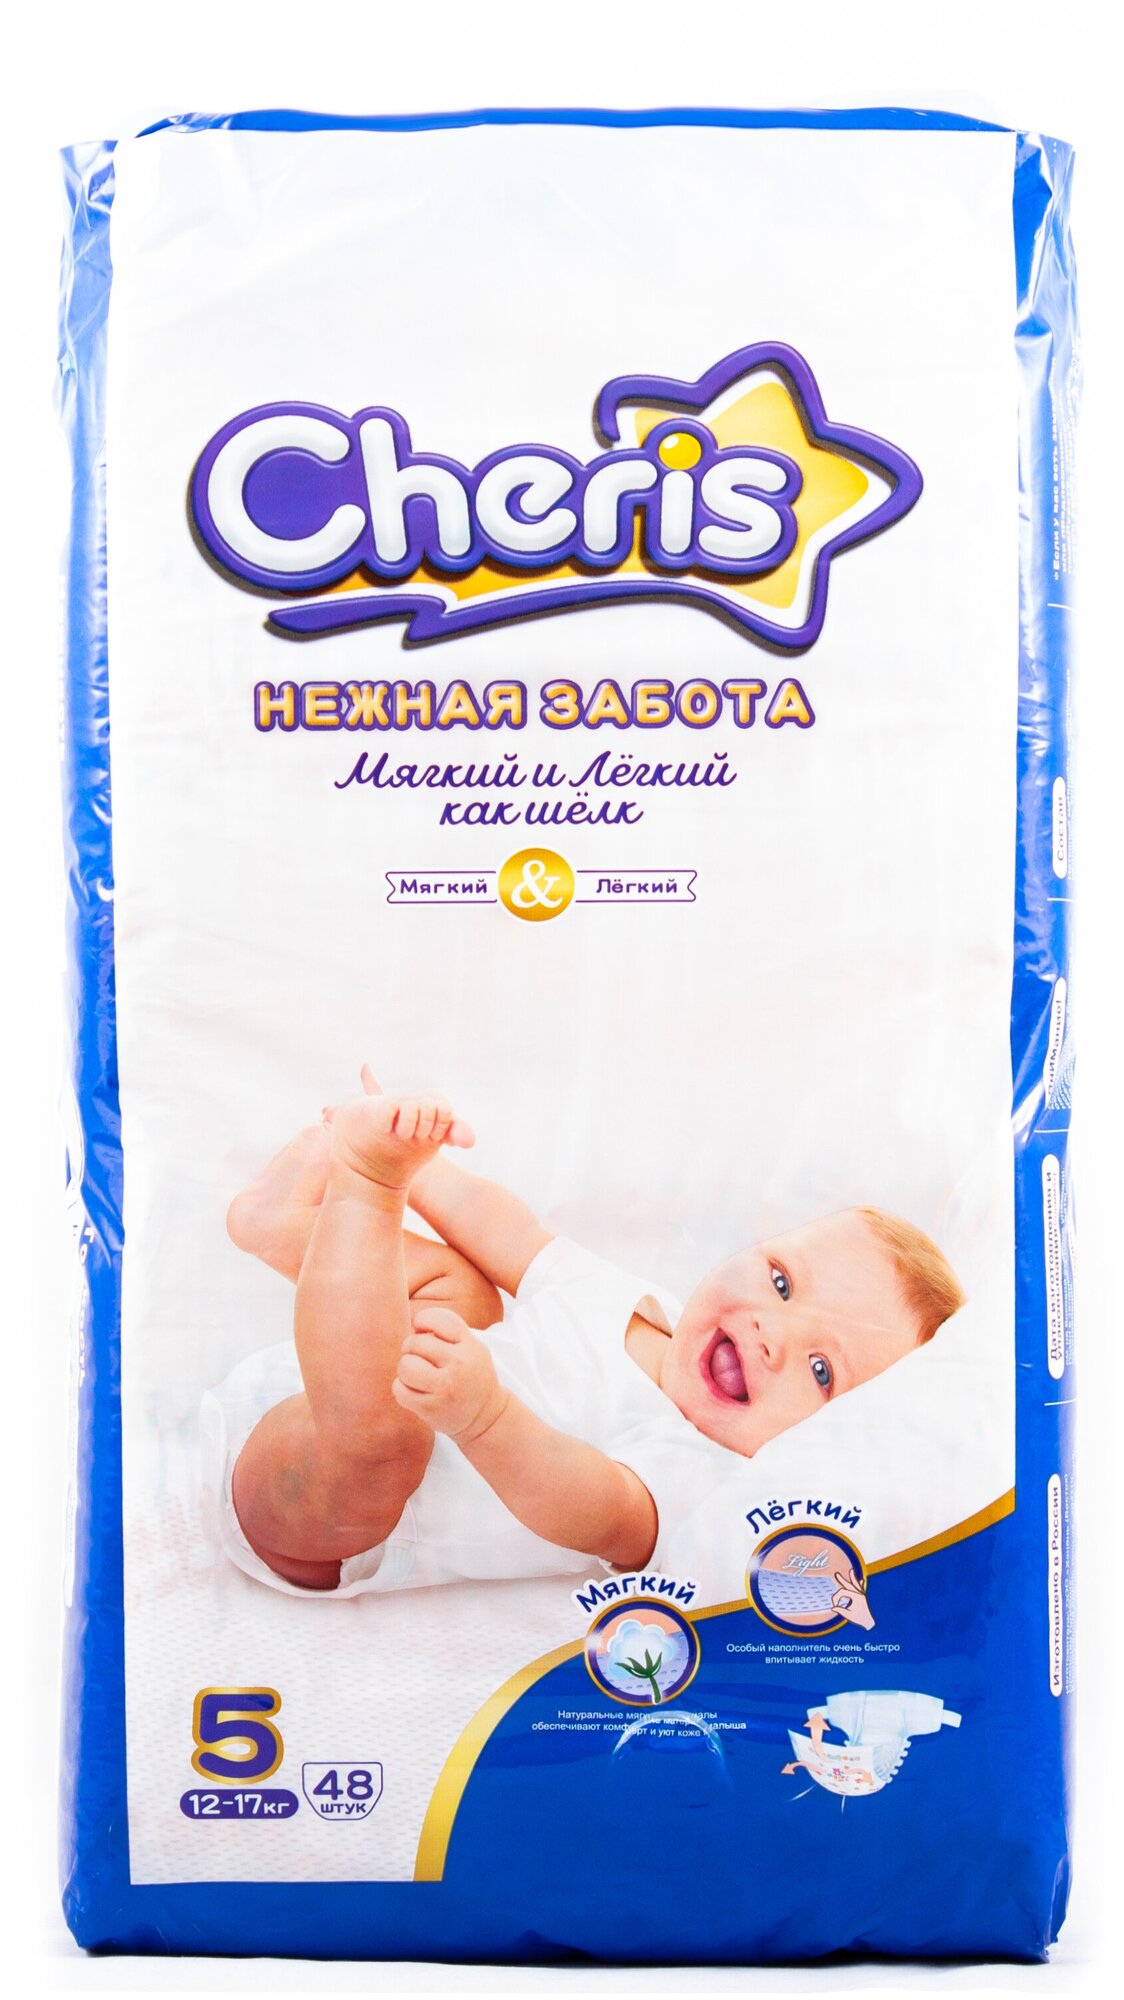 Детские подгузники Cheris 48 шт. размер XL (12-17кг.)